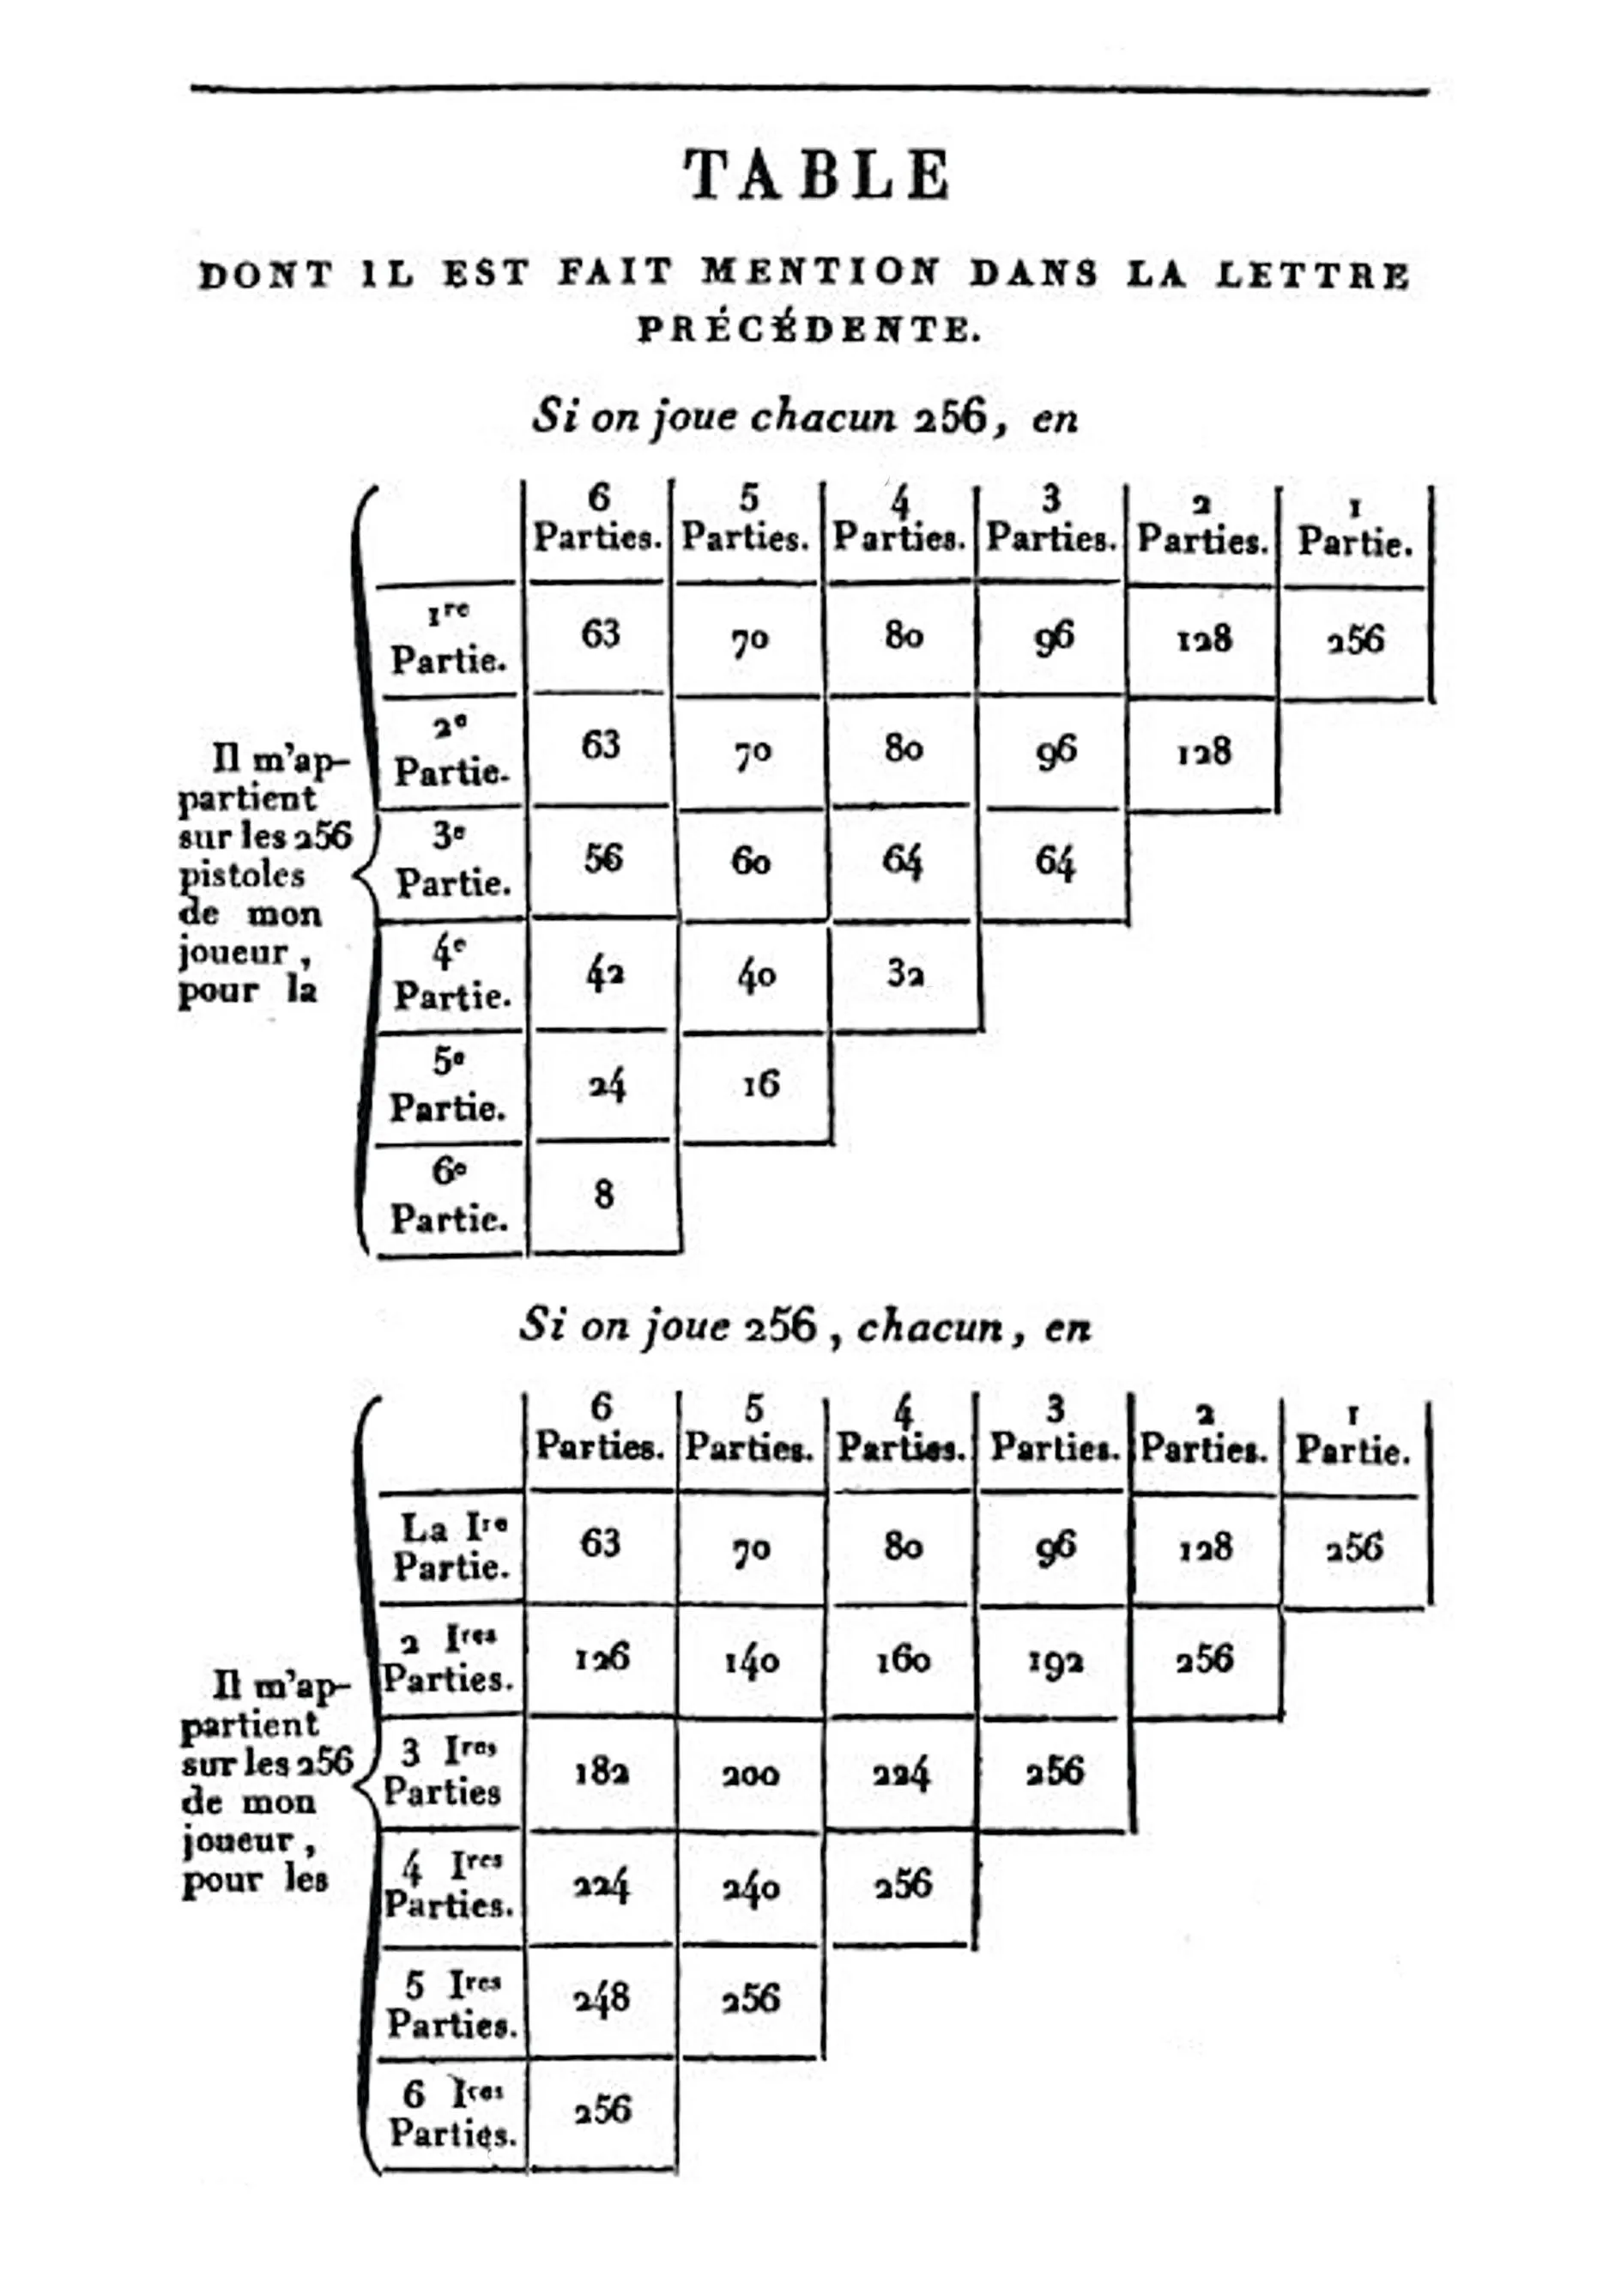 Extrait des échanges entre Pascal et Fermat, 1654